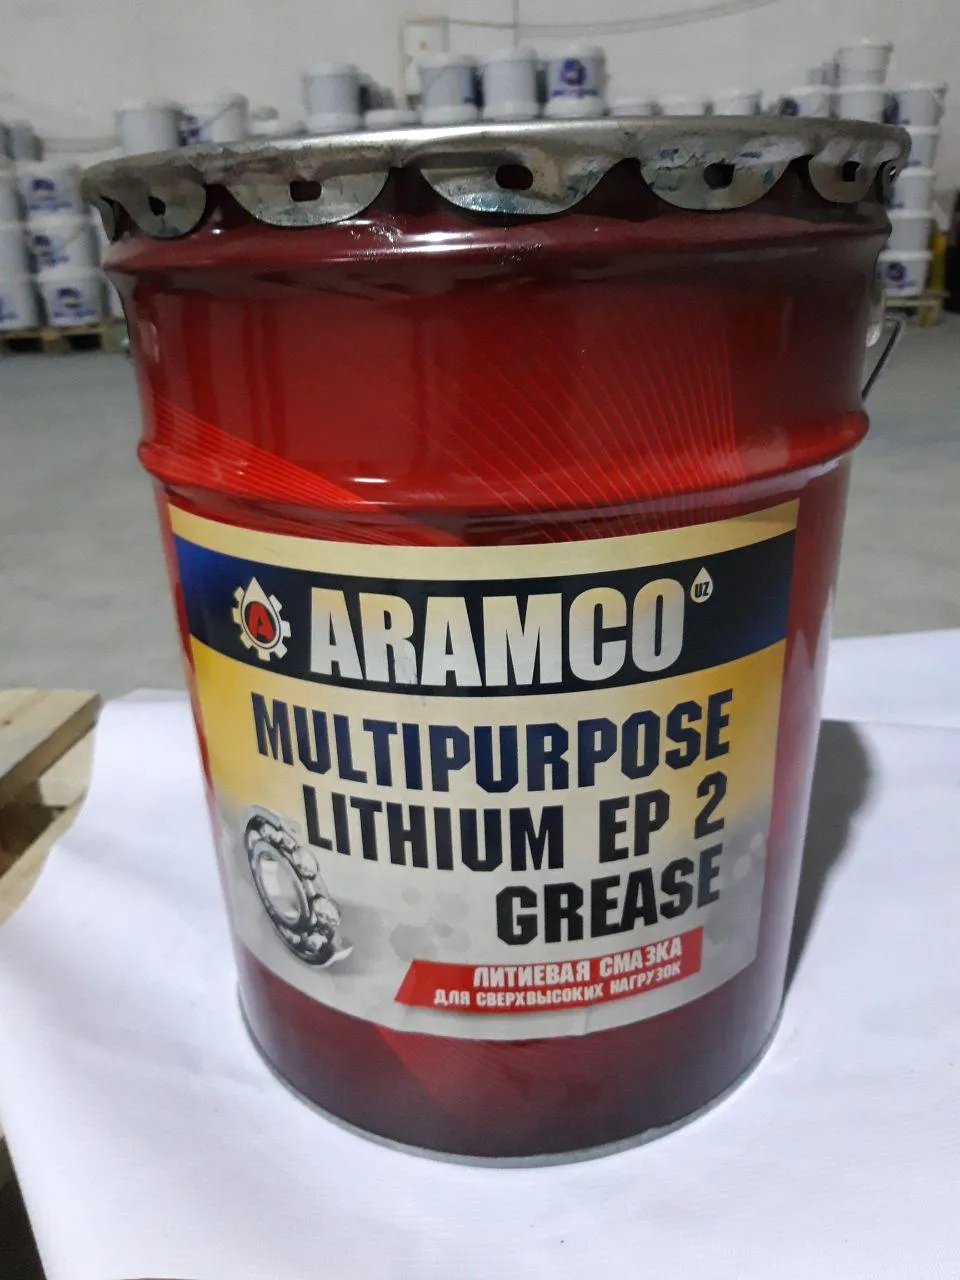 Aramco Multipurpose Lithium Grease EP 2#1